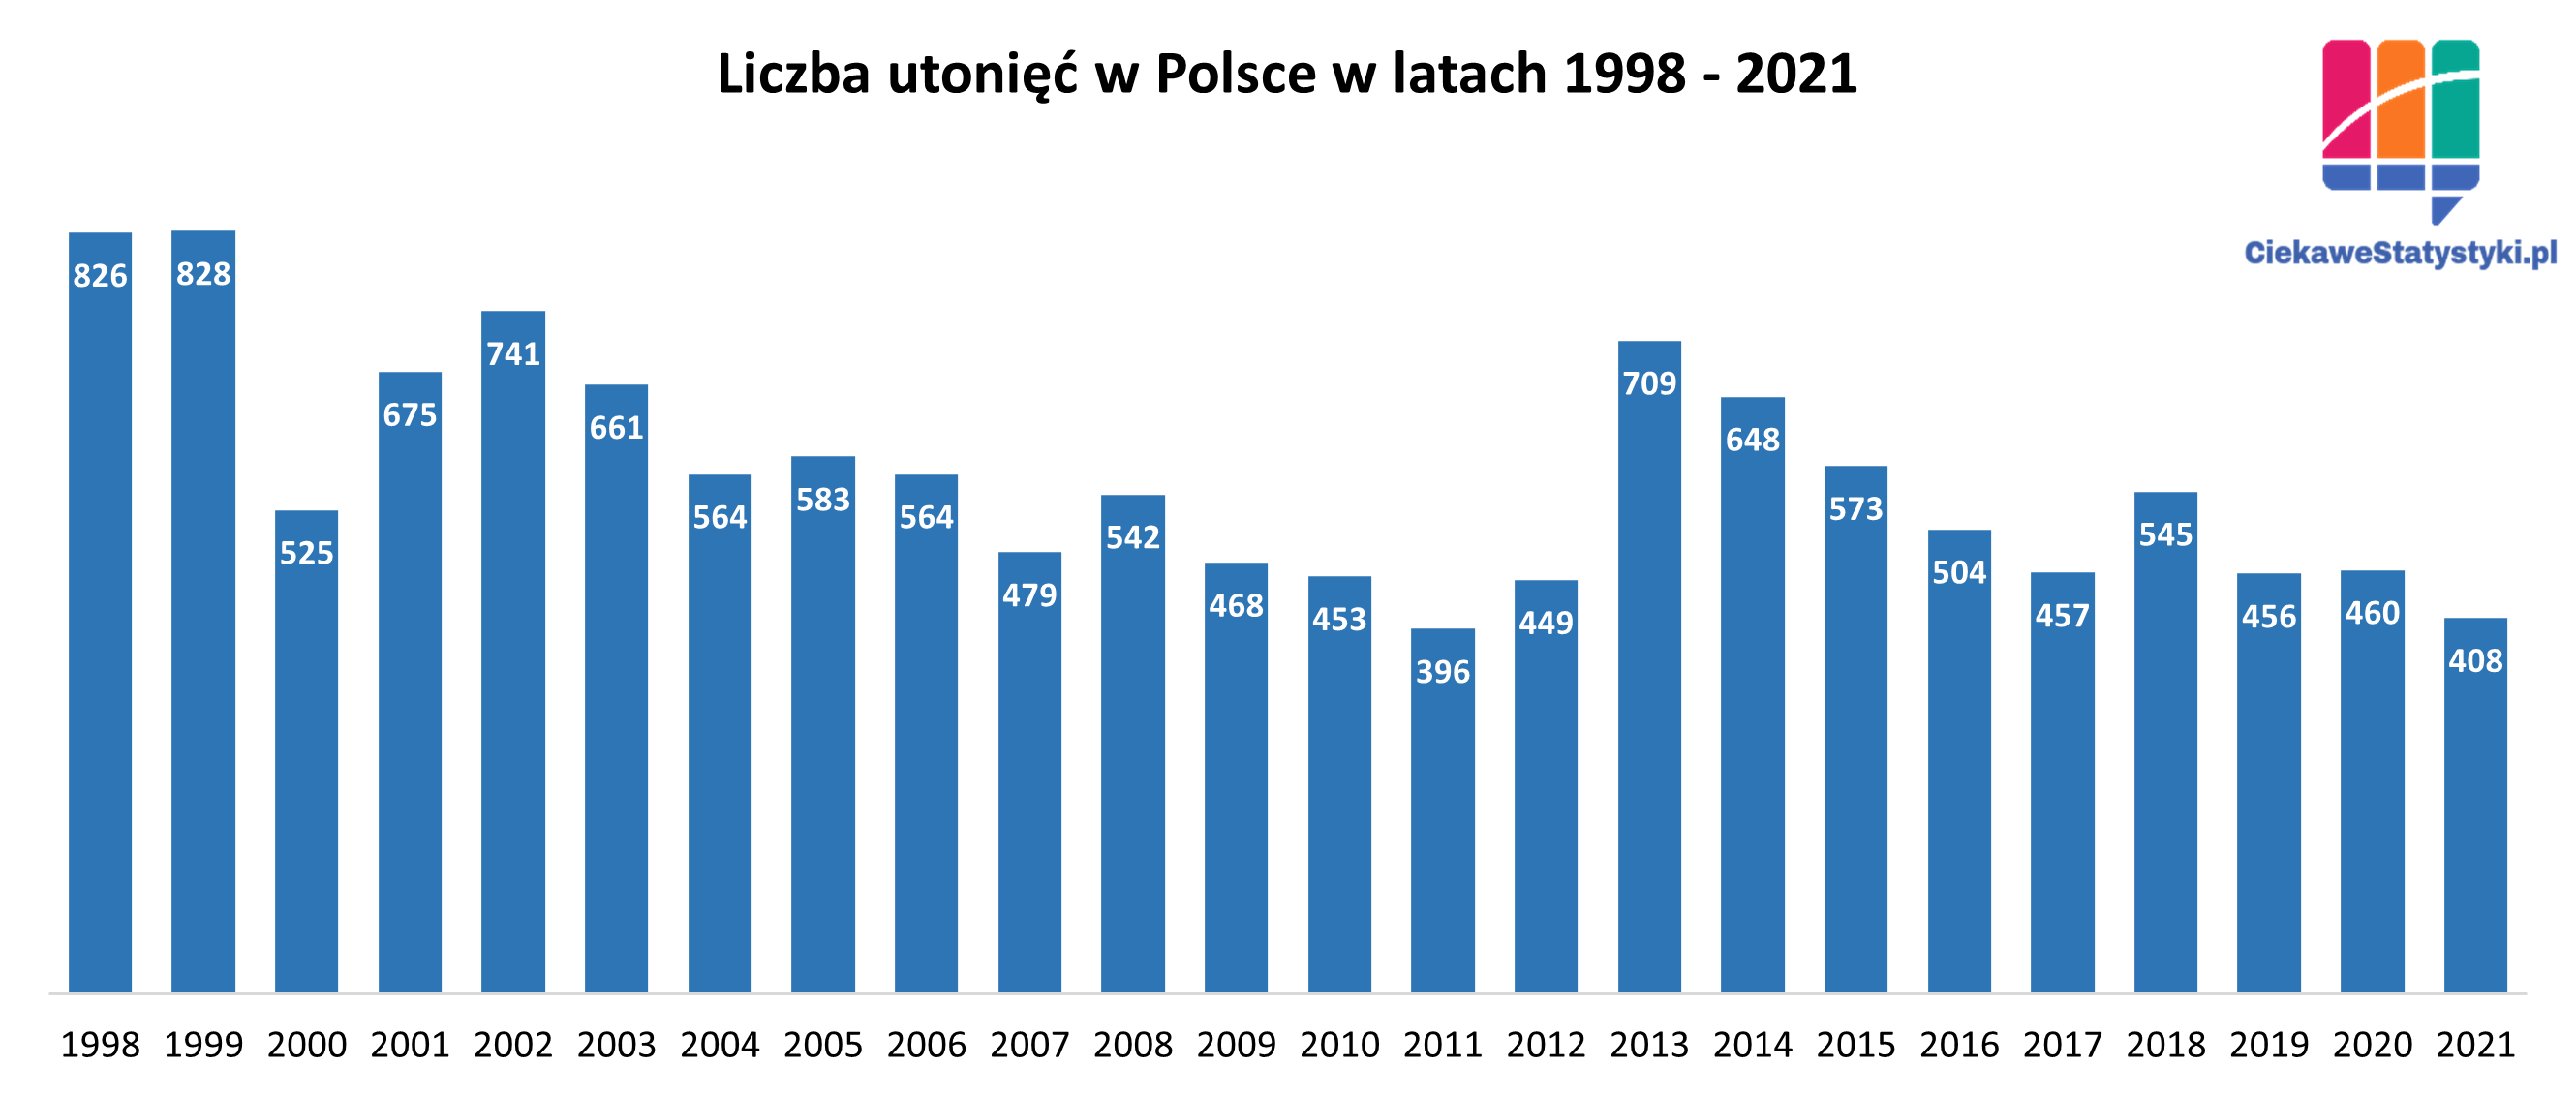 Wykres przedstawiający liczbę utonięć w Polsce od 1998 roku do 2021 roku